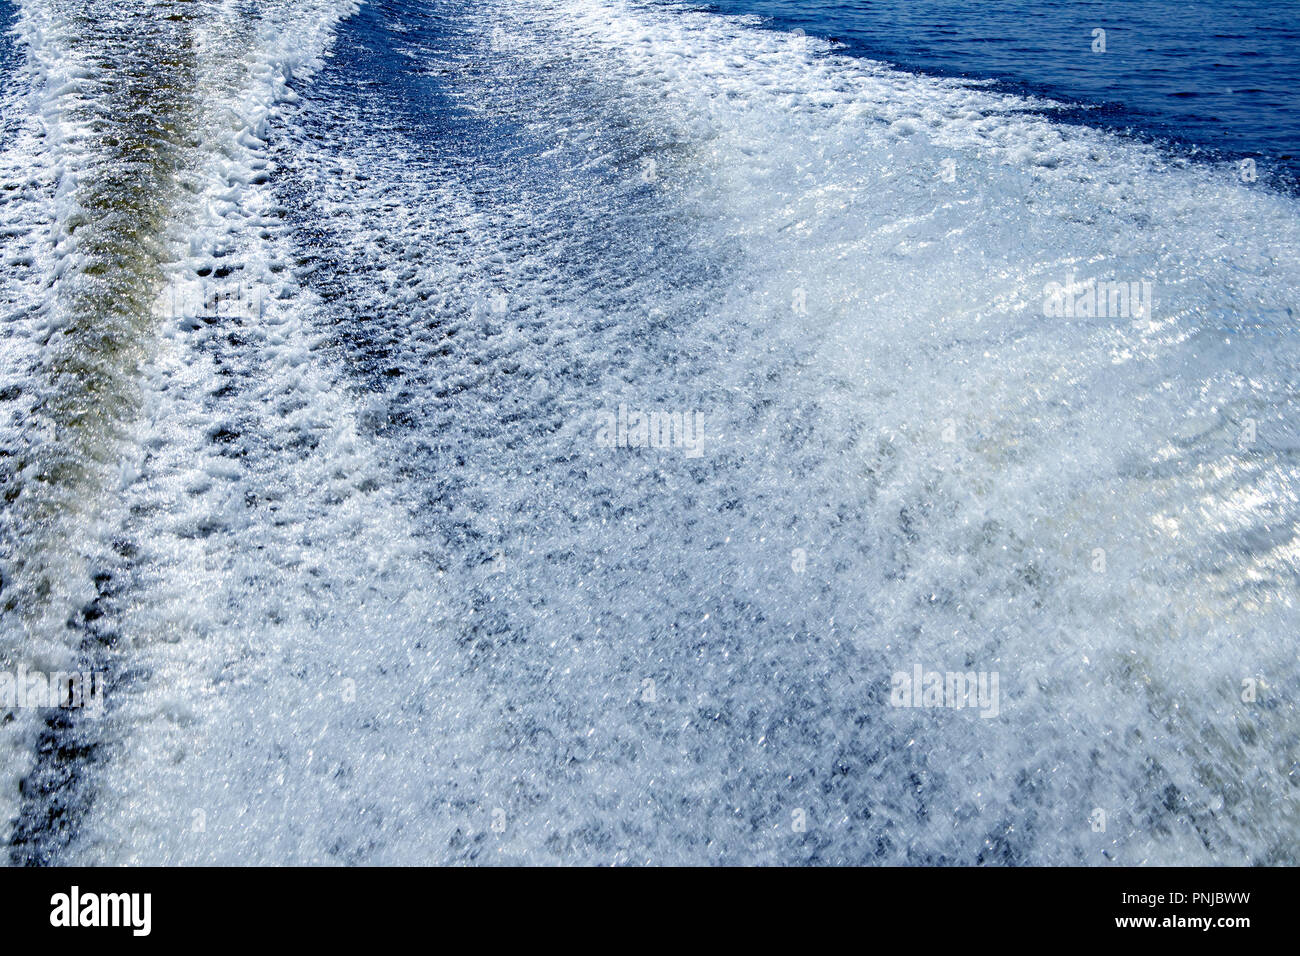 Grande barca trail con onde spumeggianti e spray dietro il veloce imbarcazione a motore Foto Stock